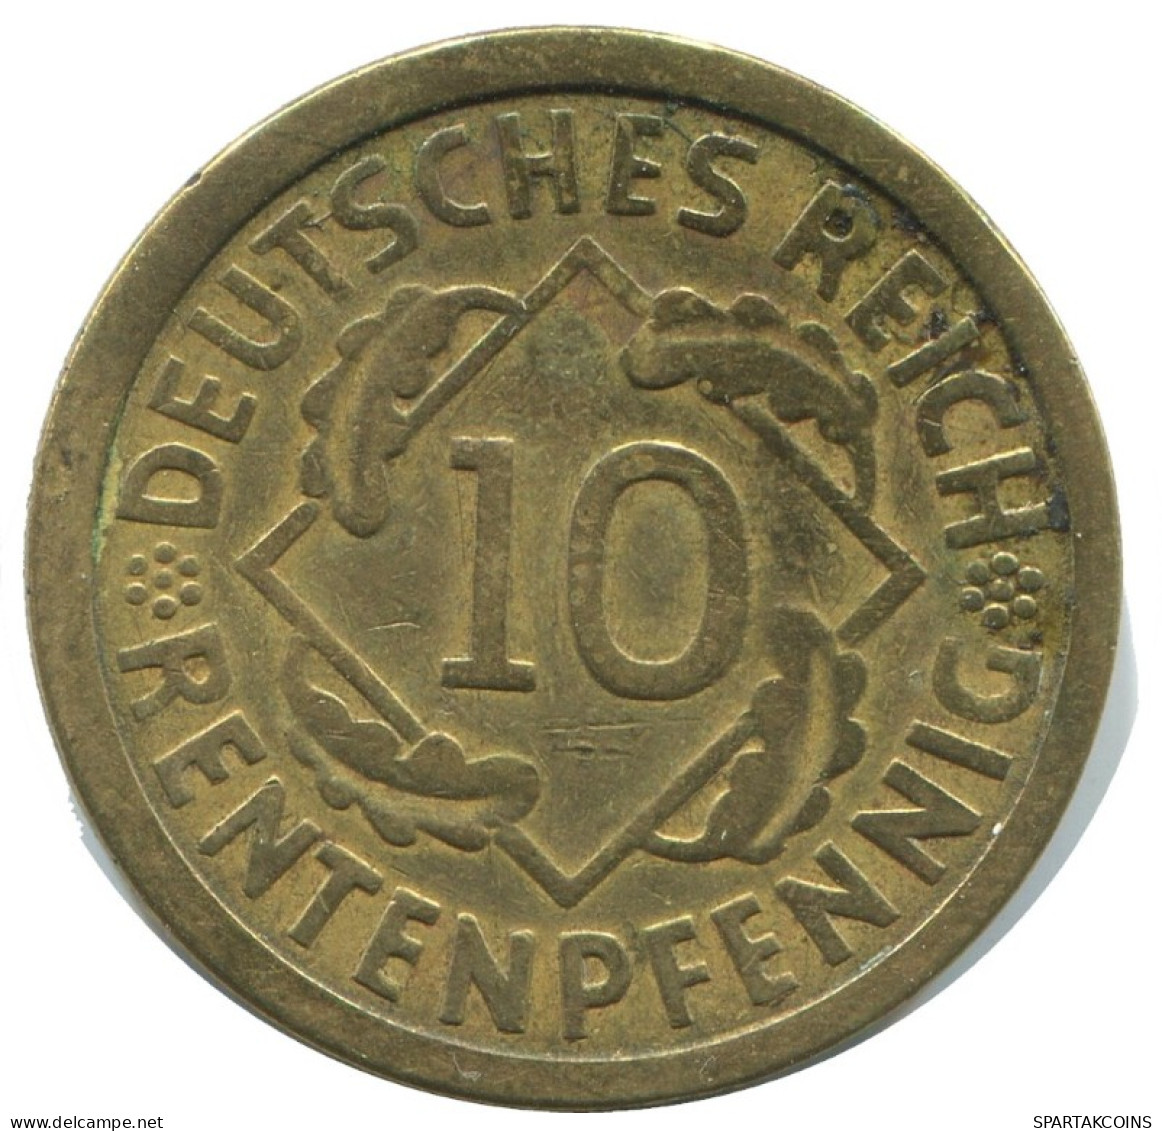 10 RENTENPFENNIG 1924 A DEUTSCHLAND Münze GERMANY #AD581.9.D.A - 10 Renten- & 10 Reichspfennig